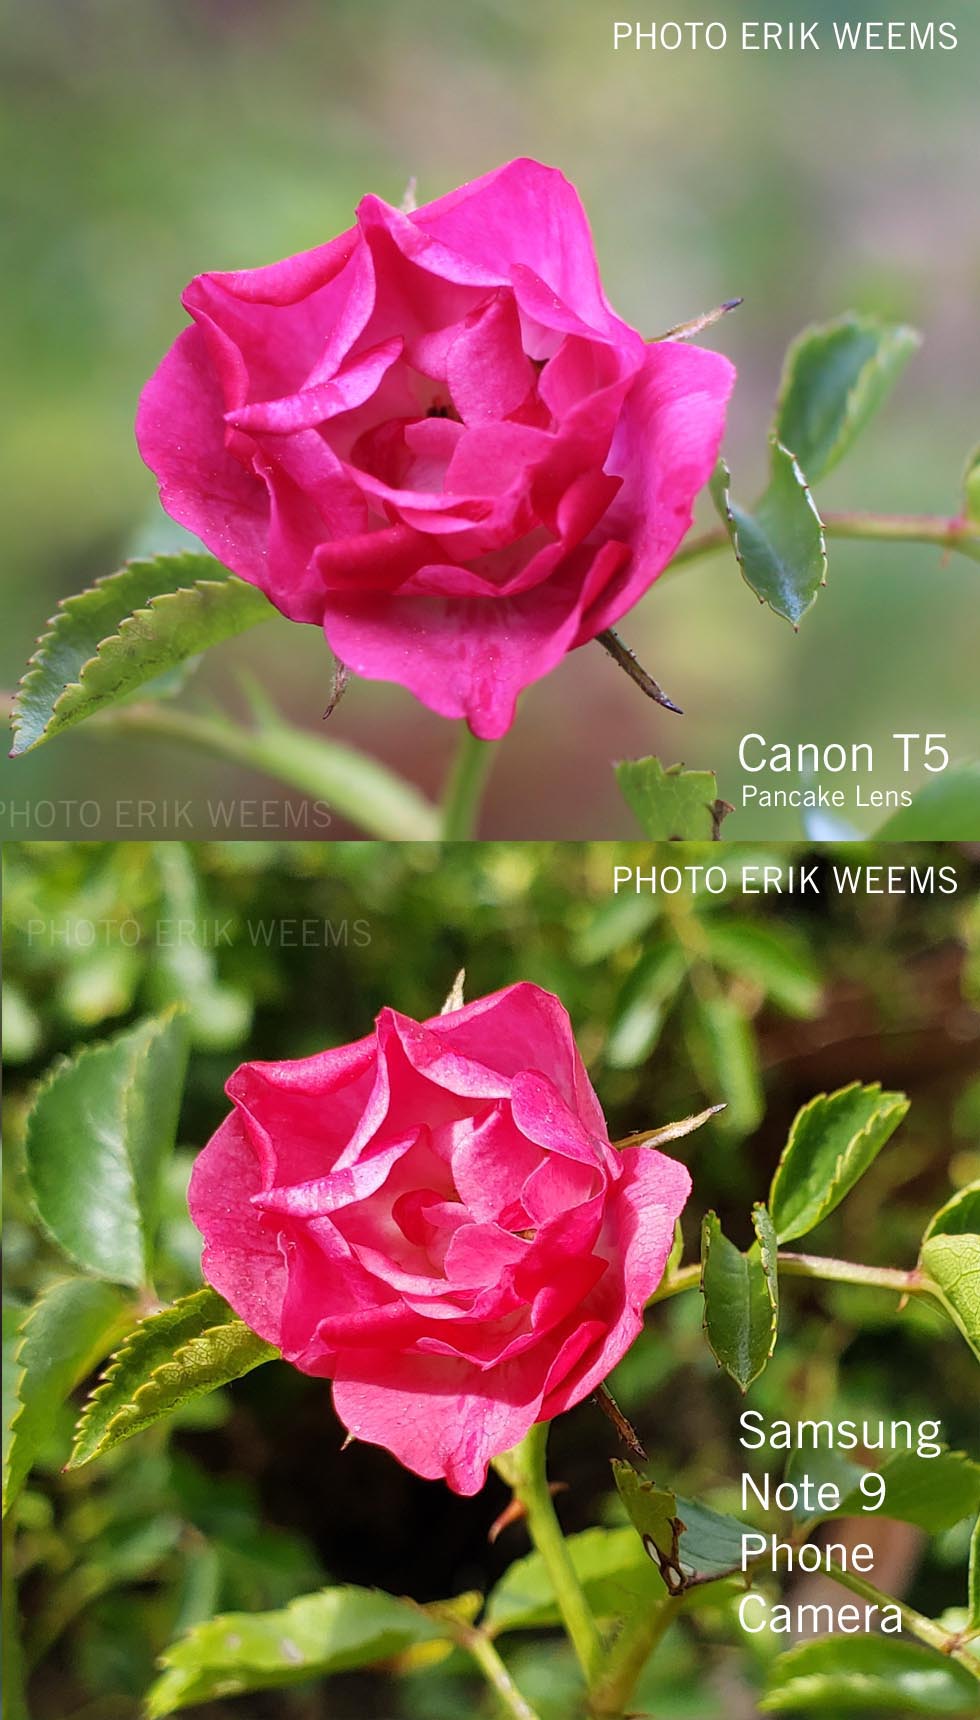 Camera Comparison T5 Canon and Samsung Note 9 Phone